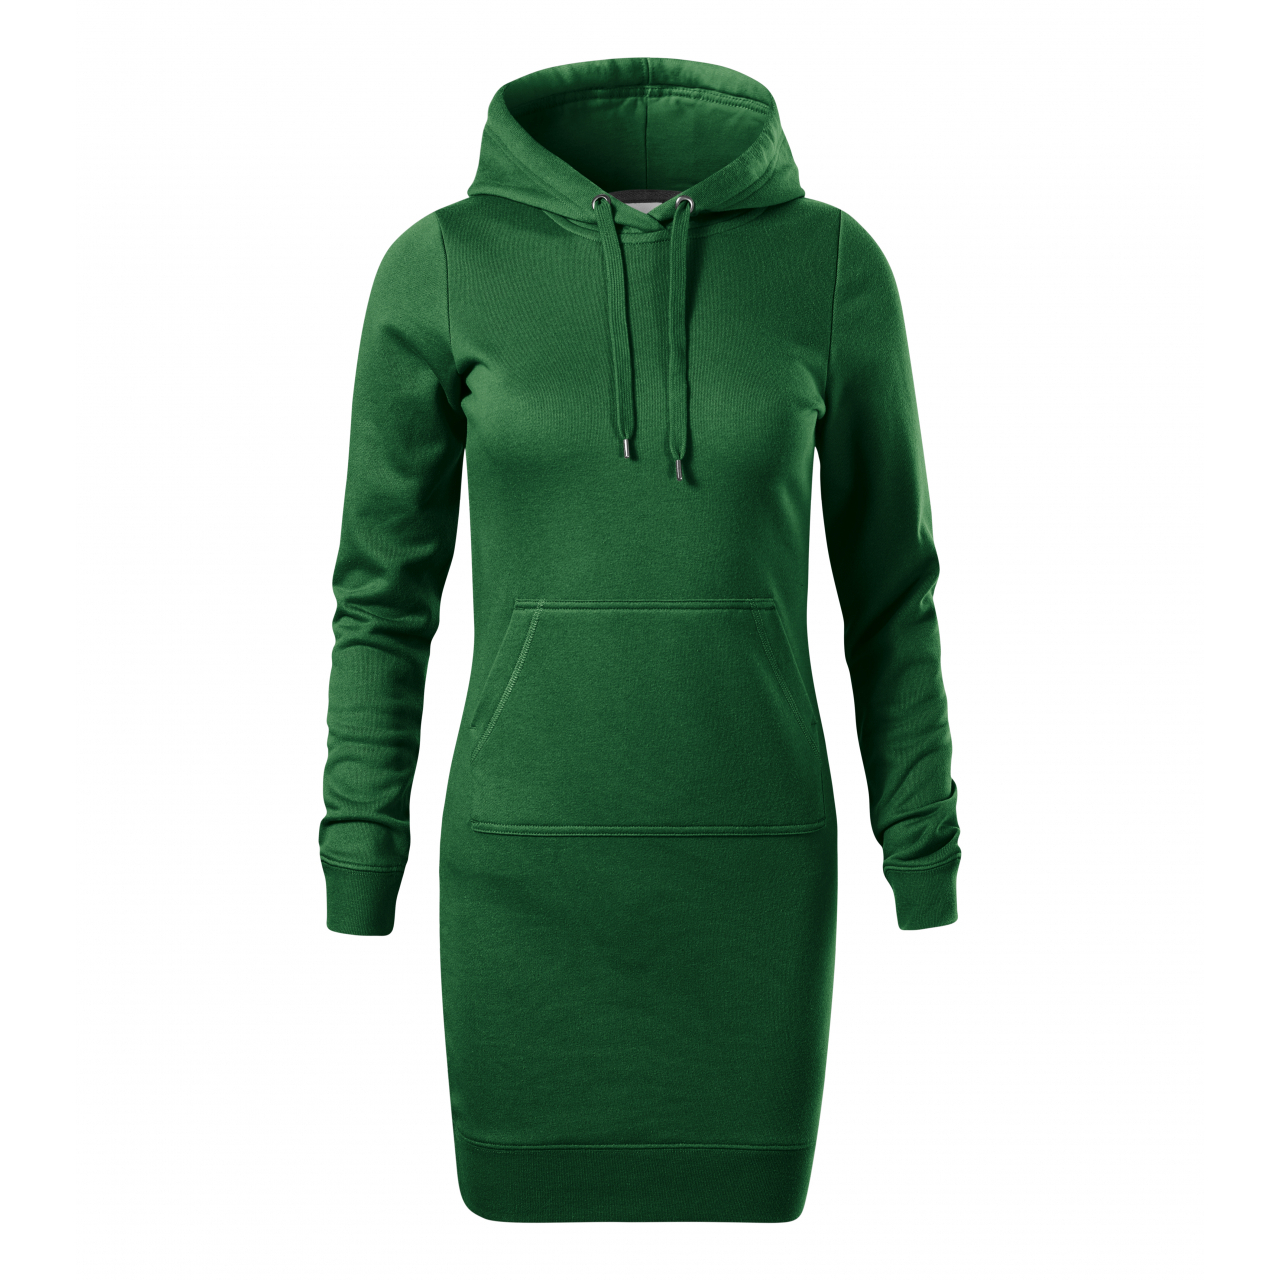 Šaty dámské Malfini Snap - tmavě zelené, XS